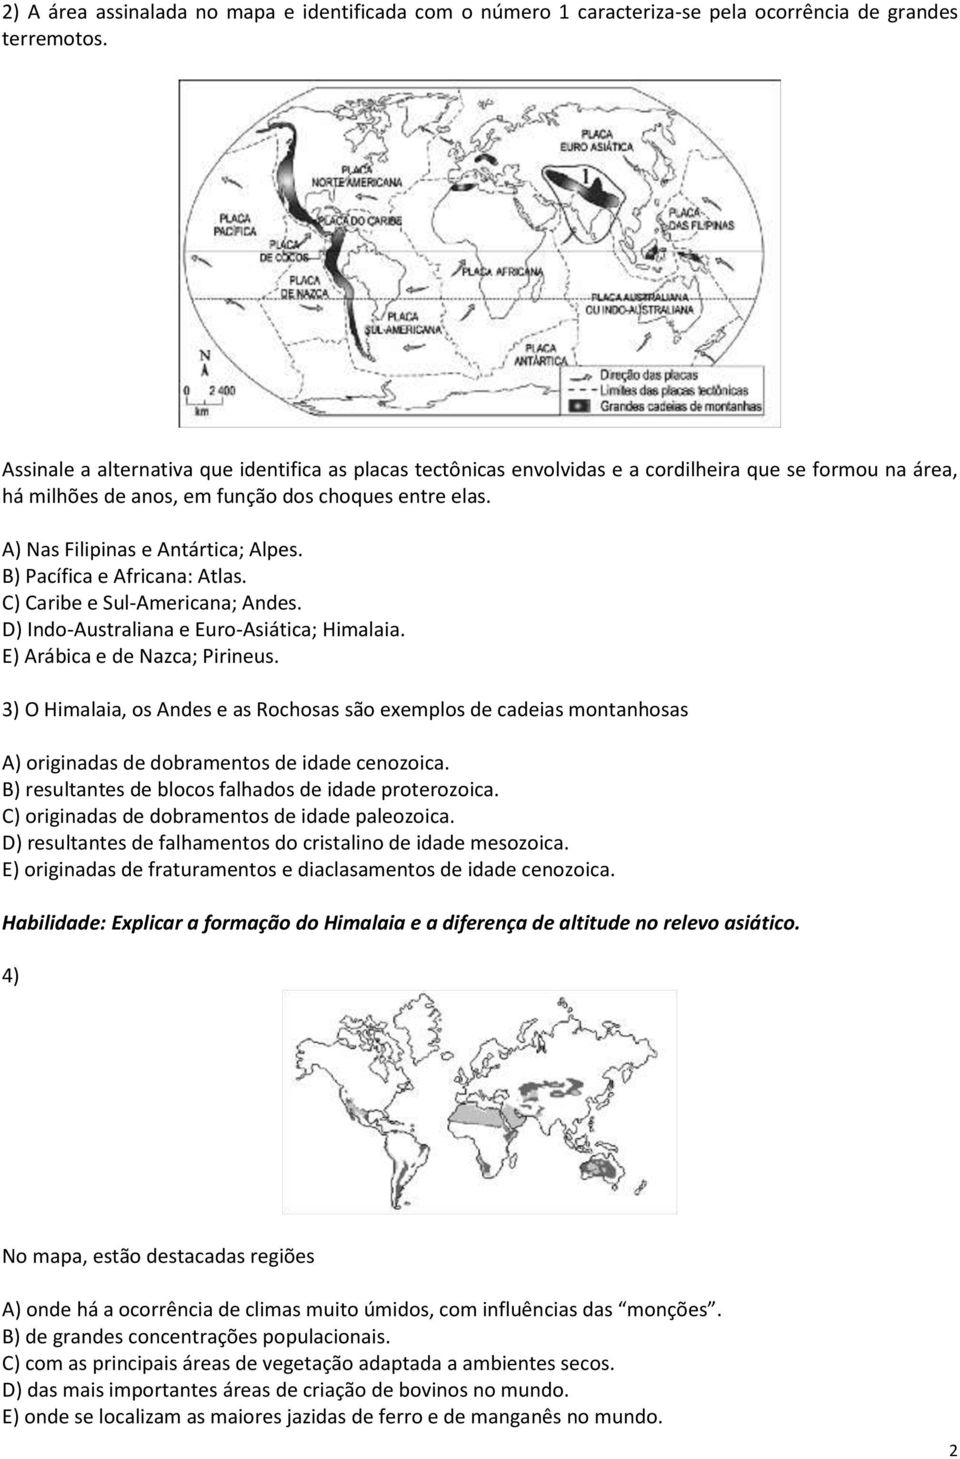 B) Pacífica e Africana: Atlas. C) Caribe e Sul-Americana; Andes. D) Indo-Australiana e Euro-Asiática; Himalaia. E) Arábica e de Nazca; Pirineus.